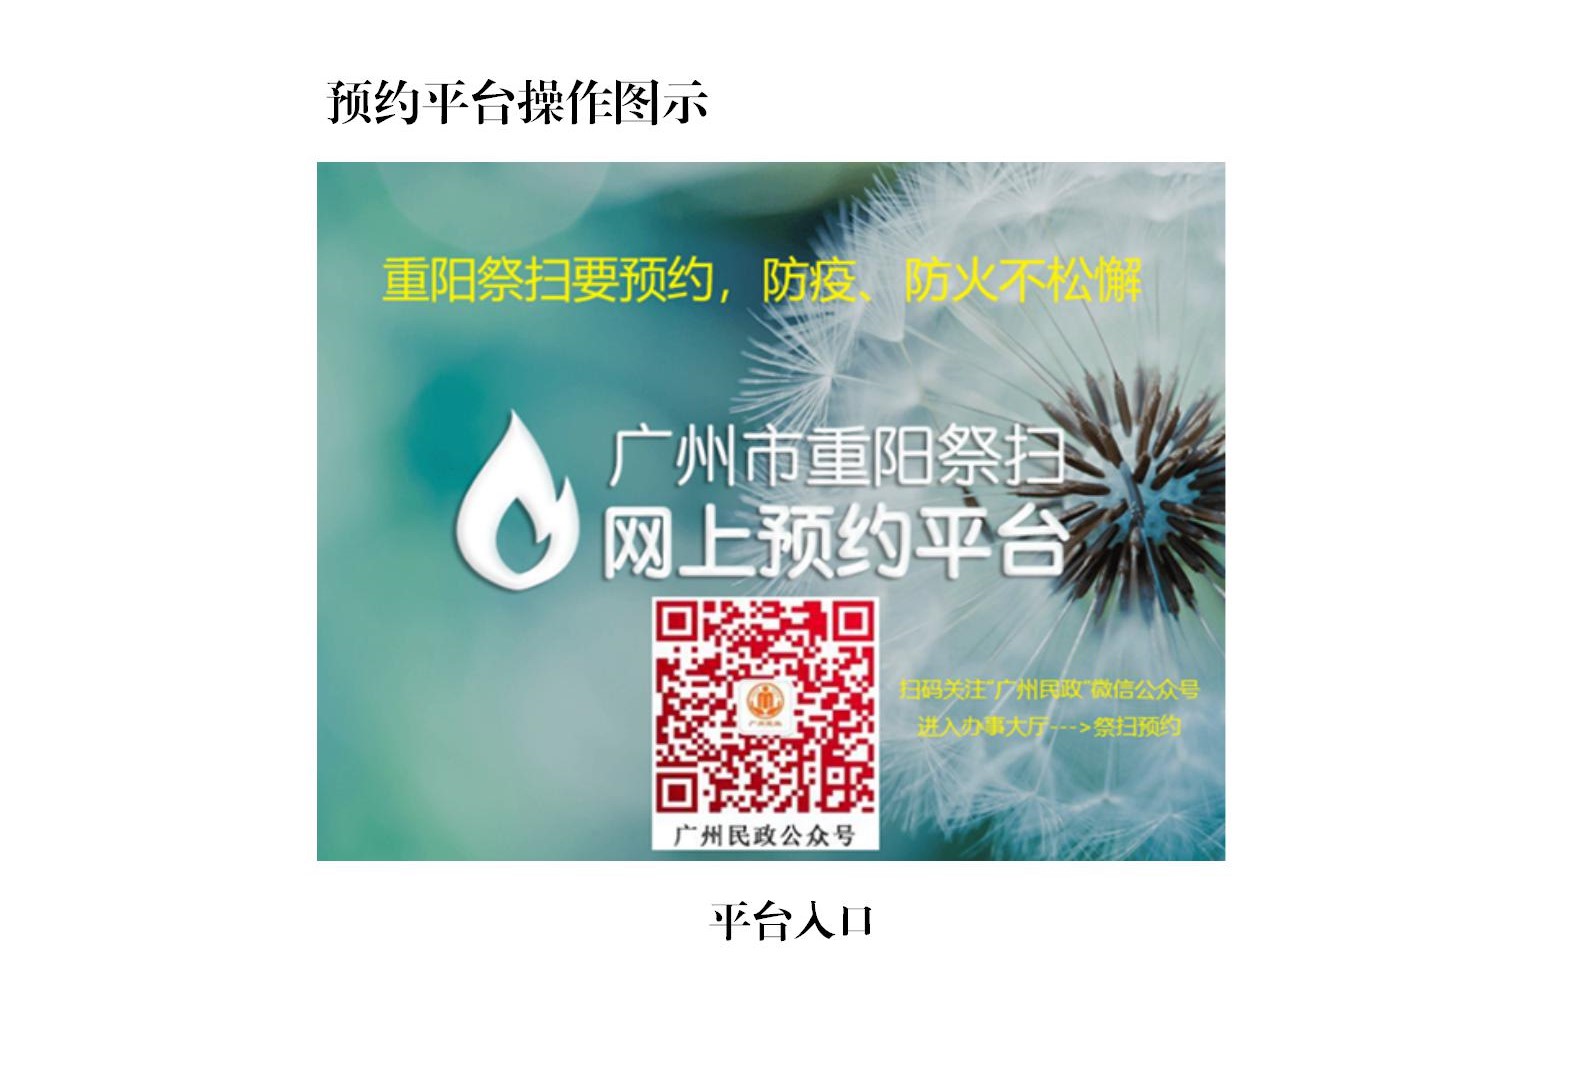 广州市2021年重阳祭扫网上预约指引_03.jpg